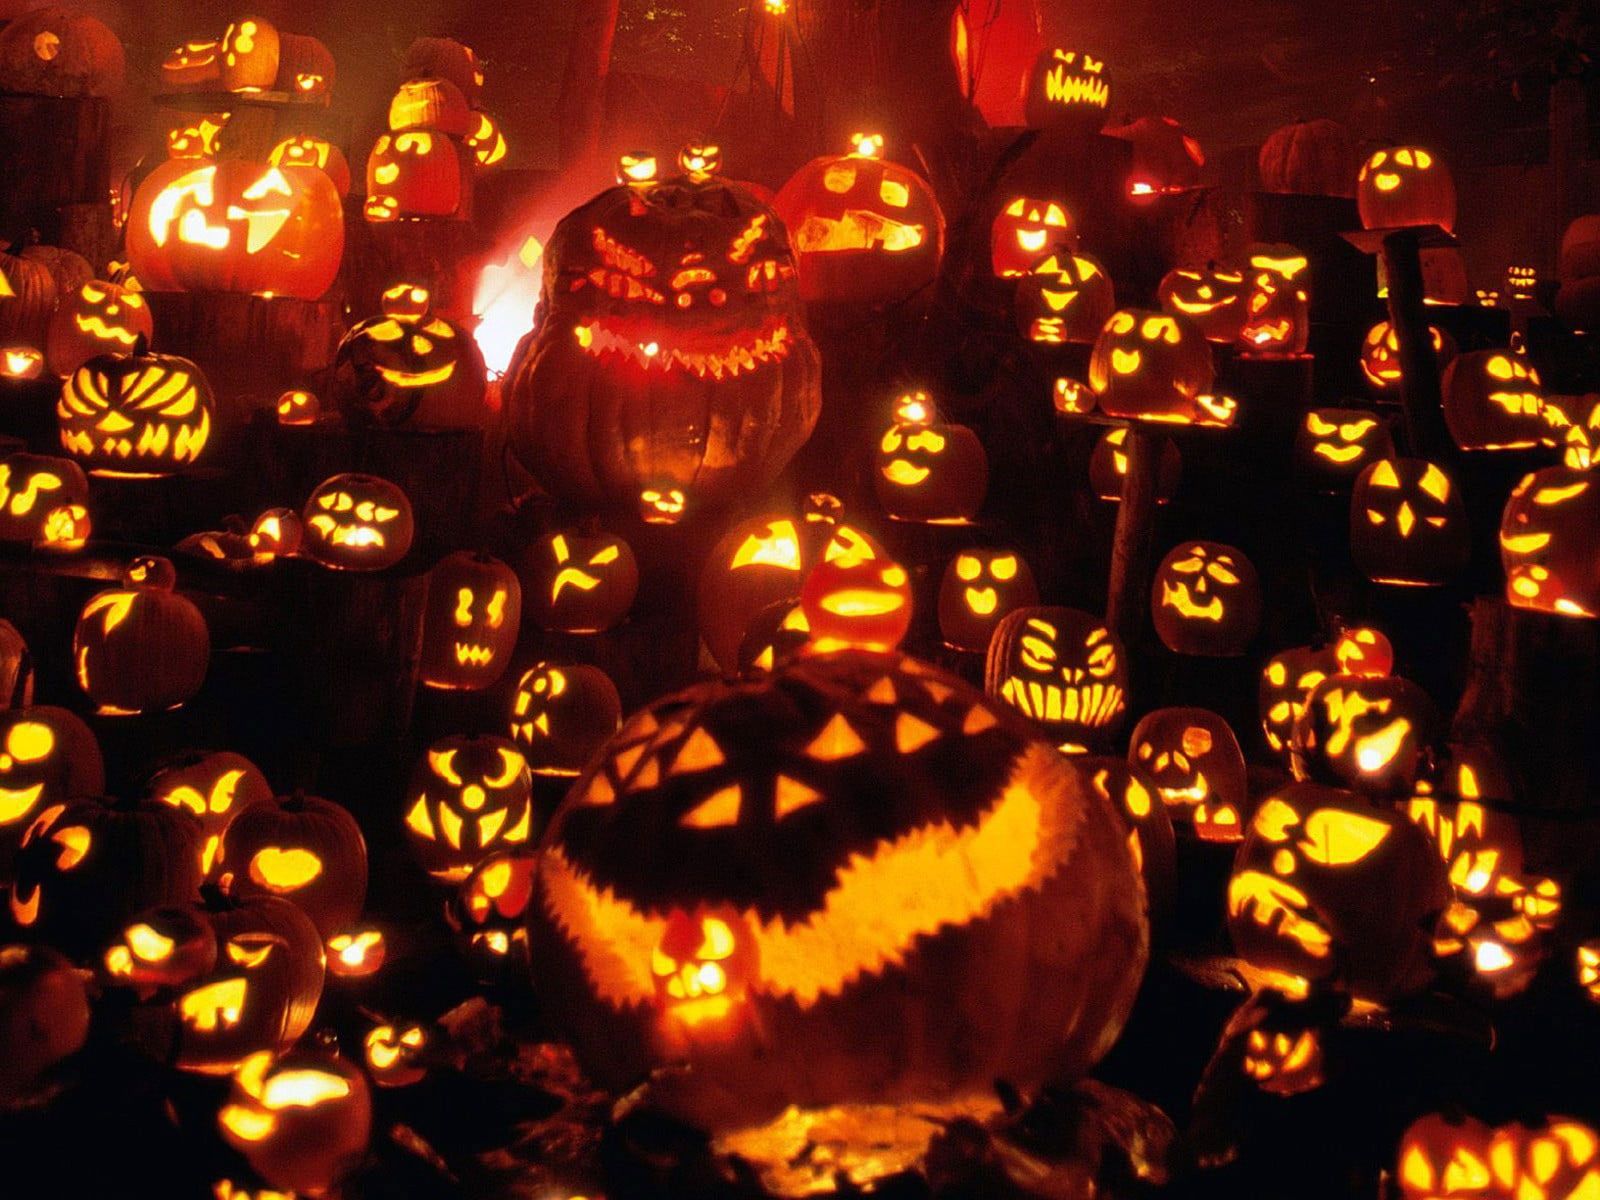 A bunch of carved Halloween pumpkins lit up at night. - Pumpkin